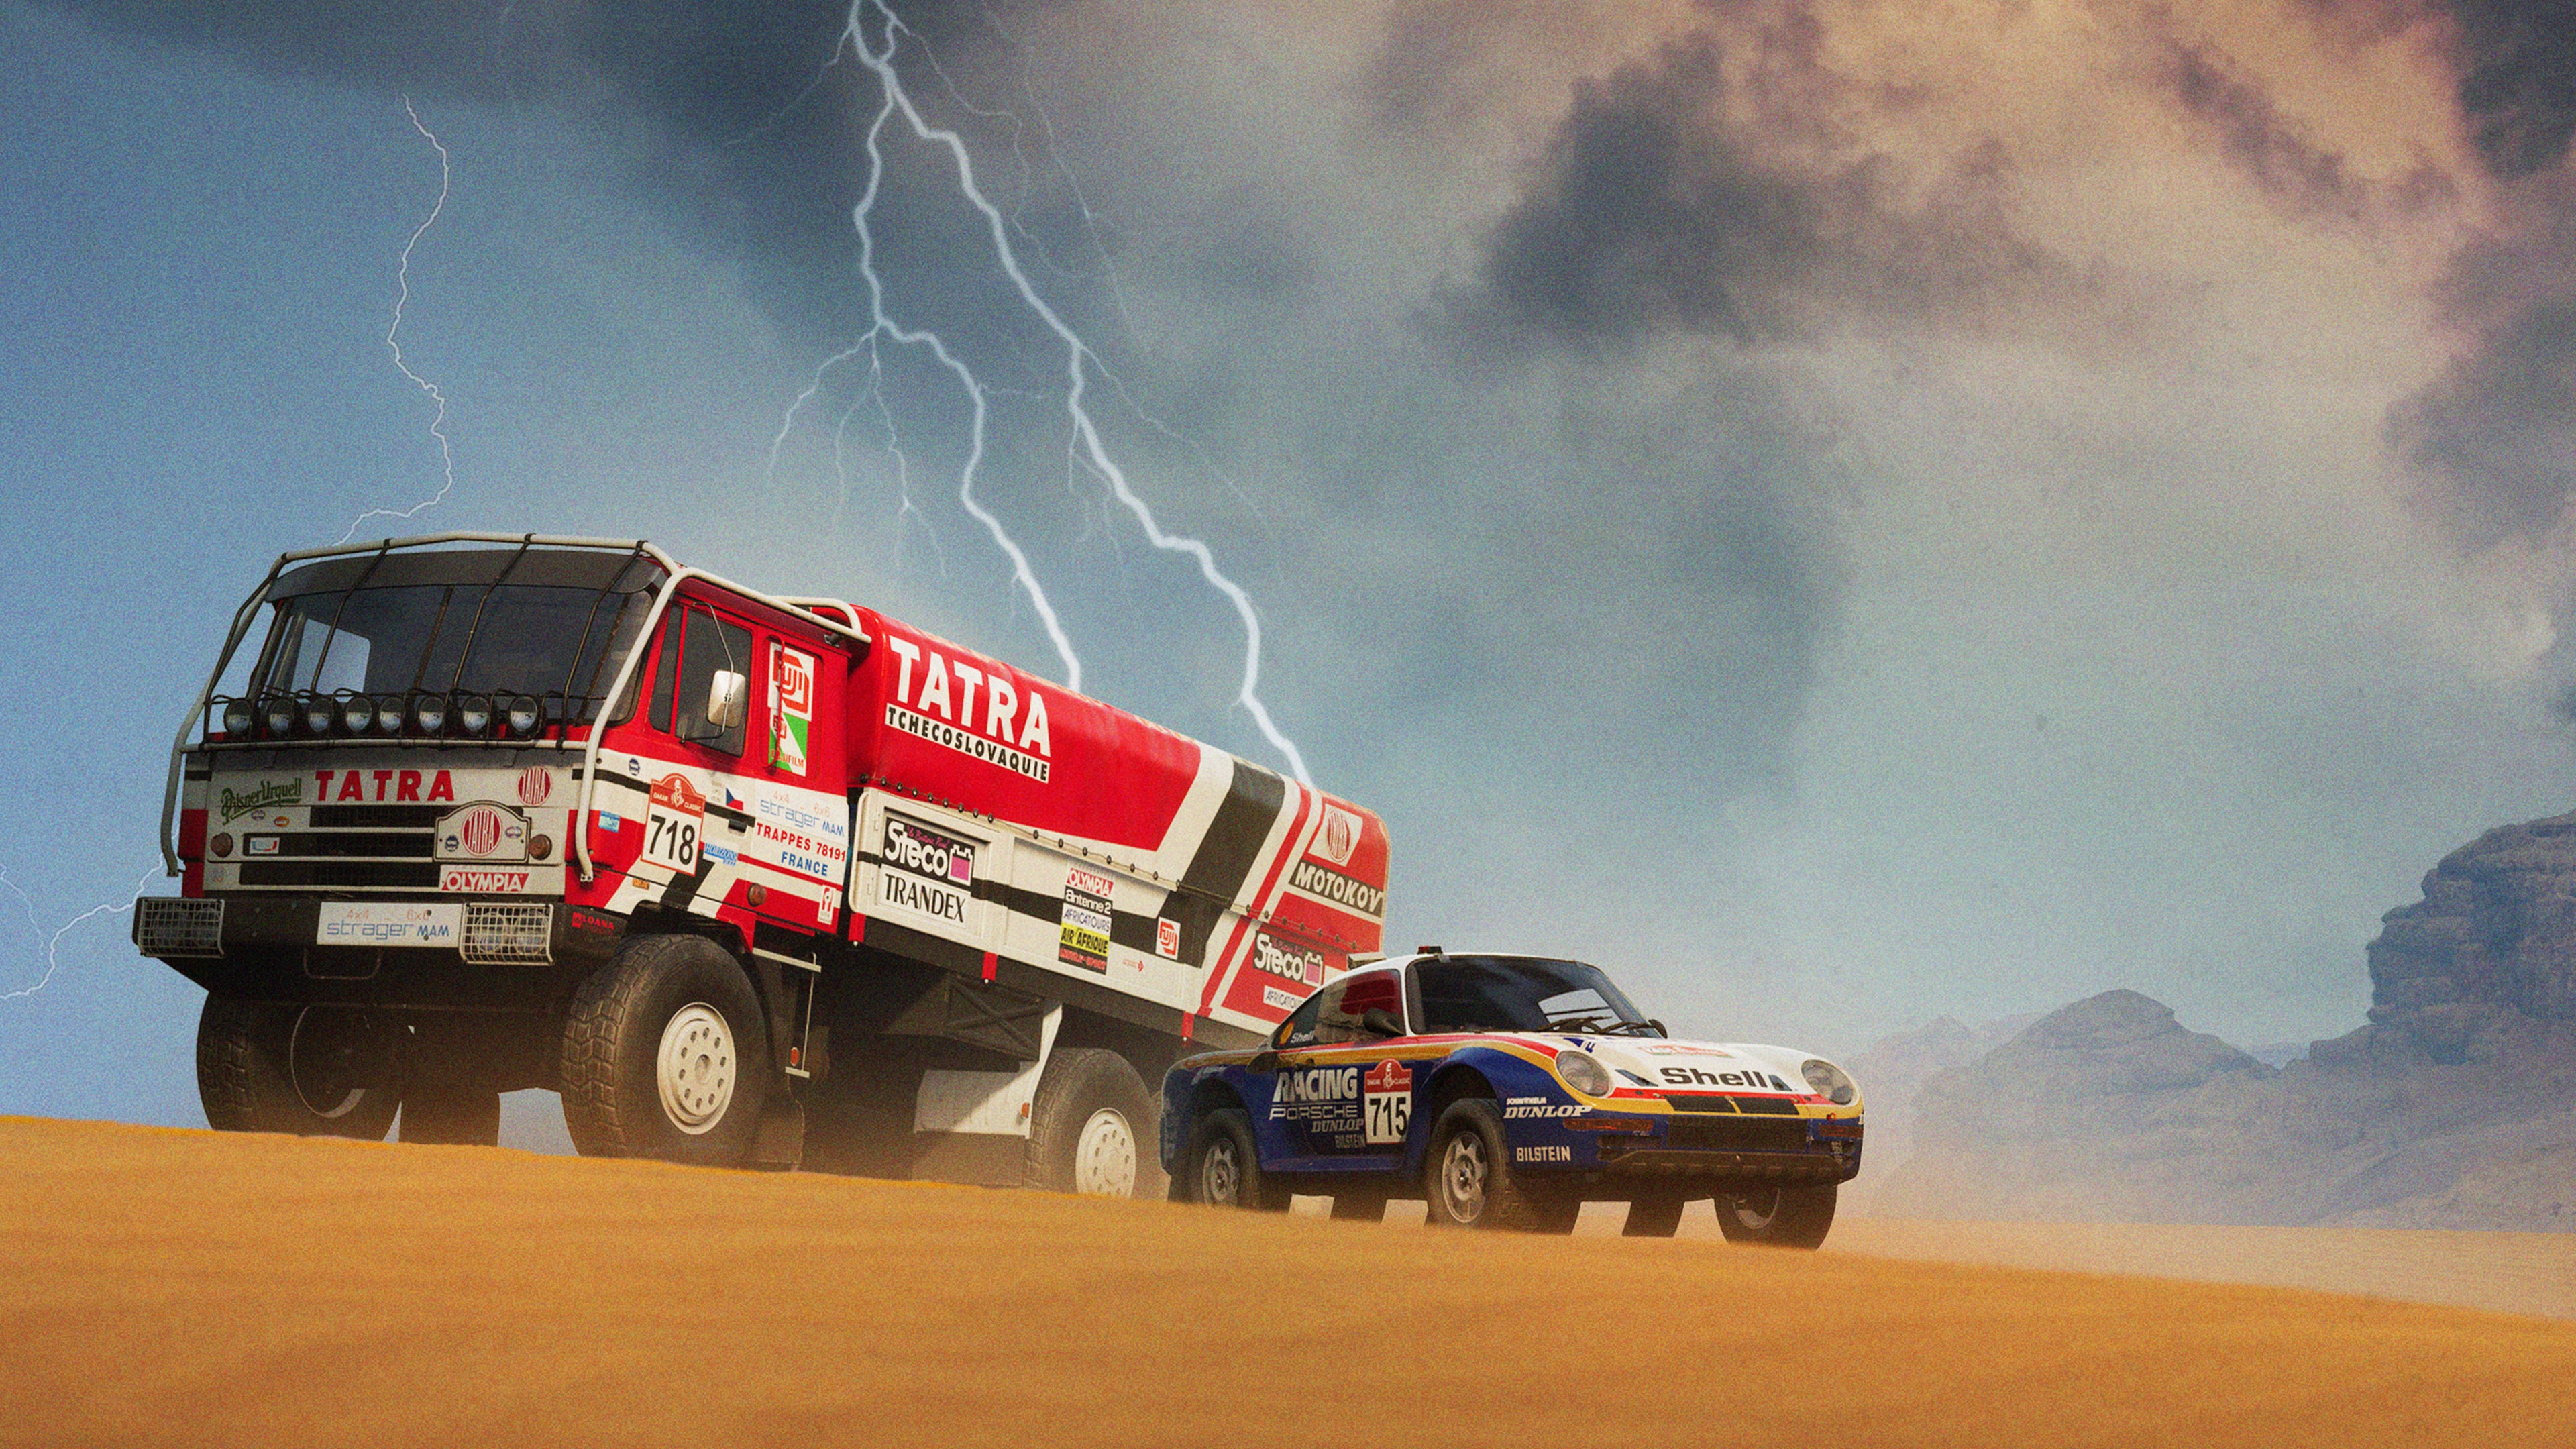 Dakar Desert Rally - Classics Vehicle Pack #1 (English/Chinese Ver.)